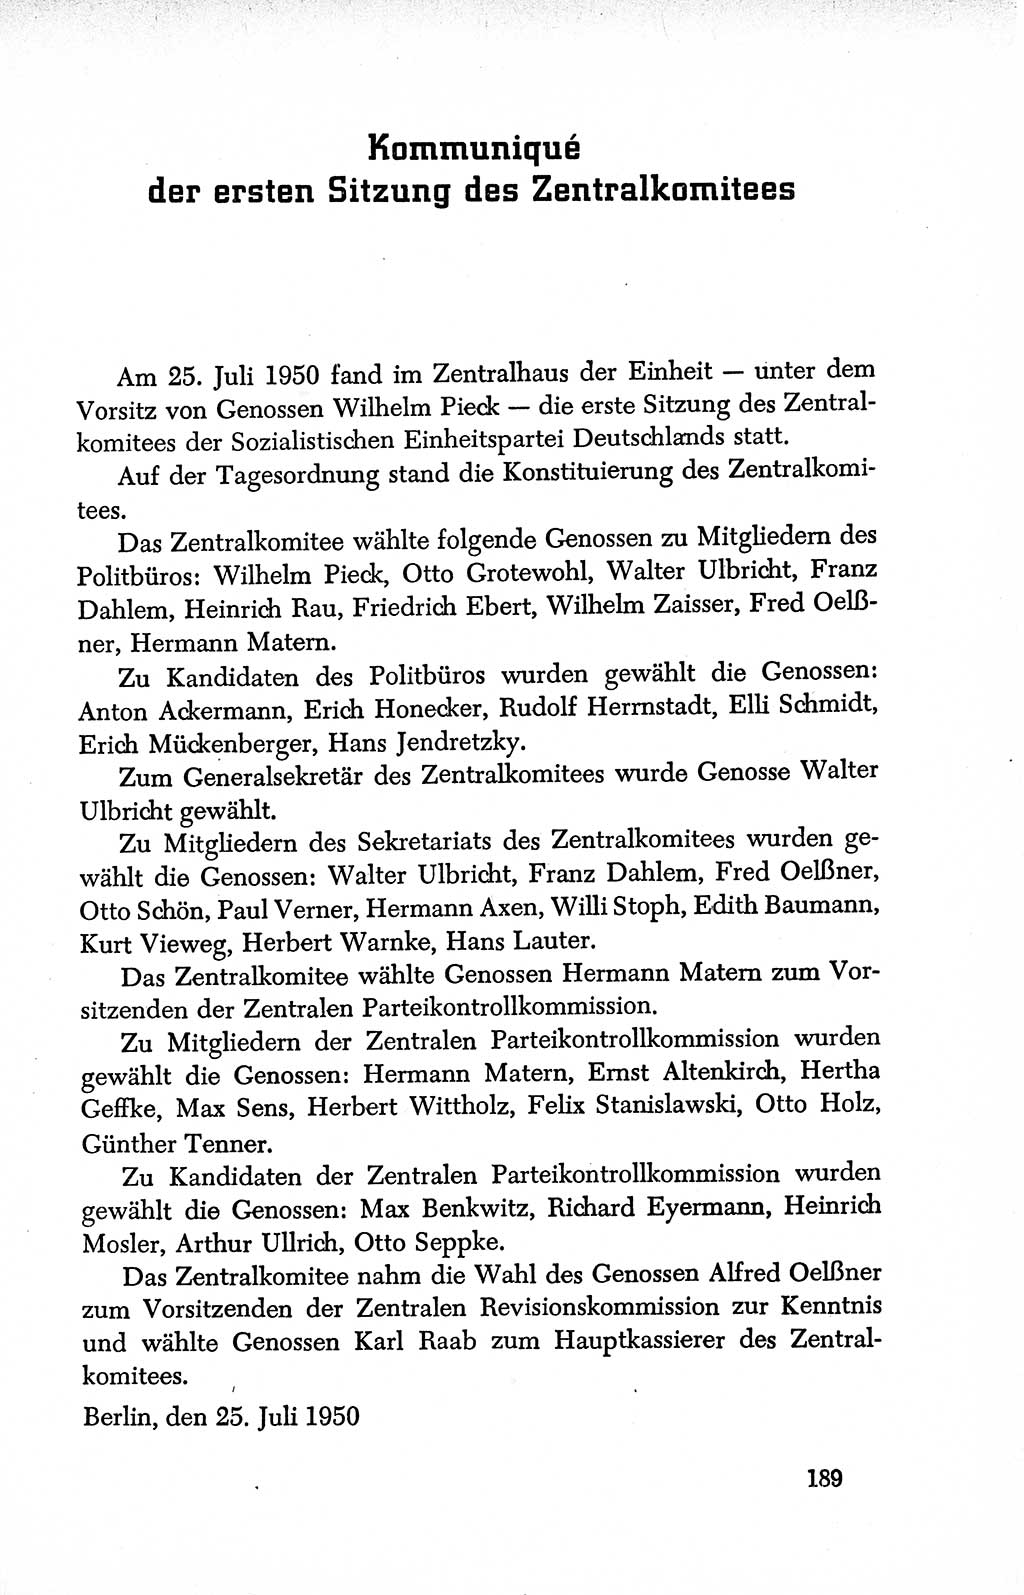 Dokumente der Sozialistischen Einheitspartei Deutschlands (SED) [Deutsche Demokratische Republik (DDR)] 1950-1952, Seite 189 (Dok. SED DDR 1950-1952, S. 189)